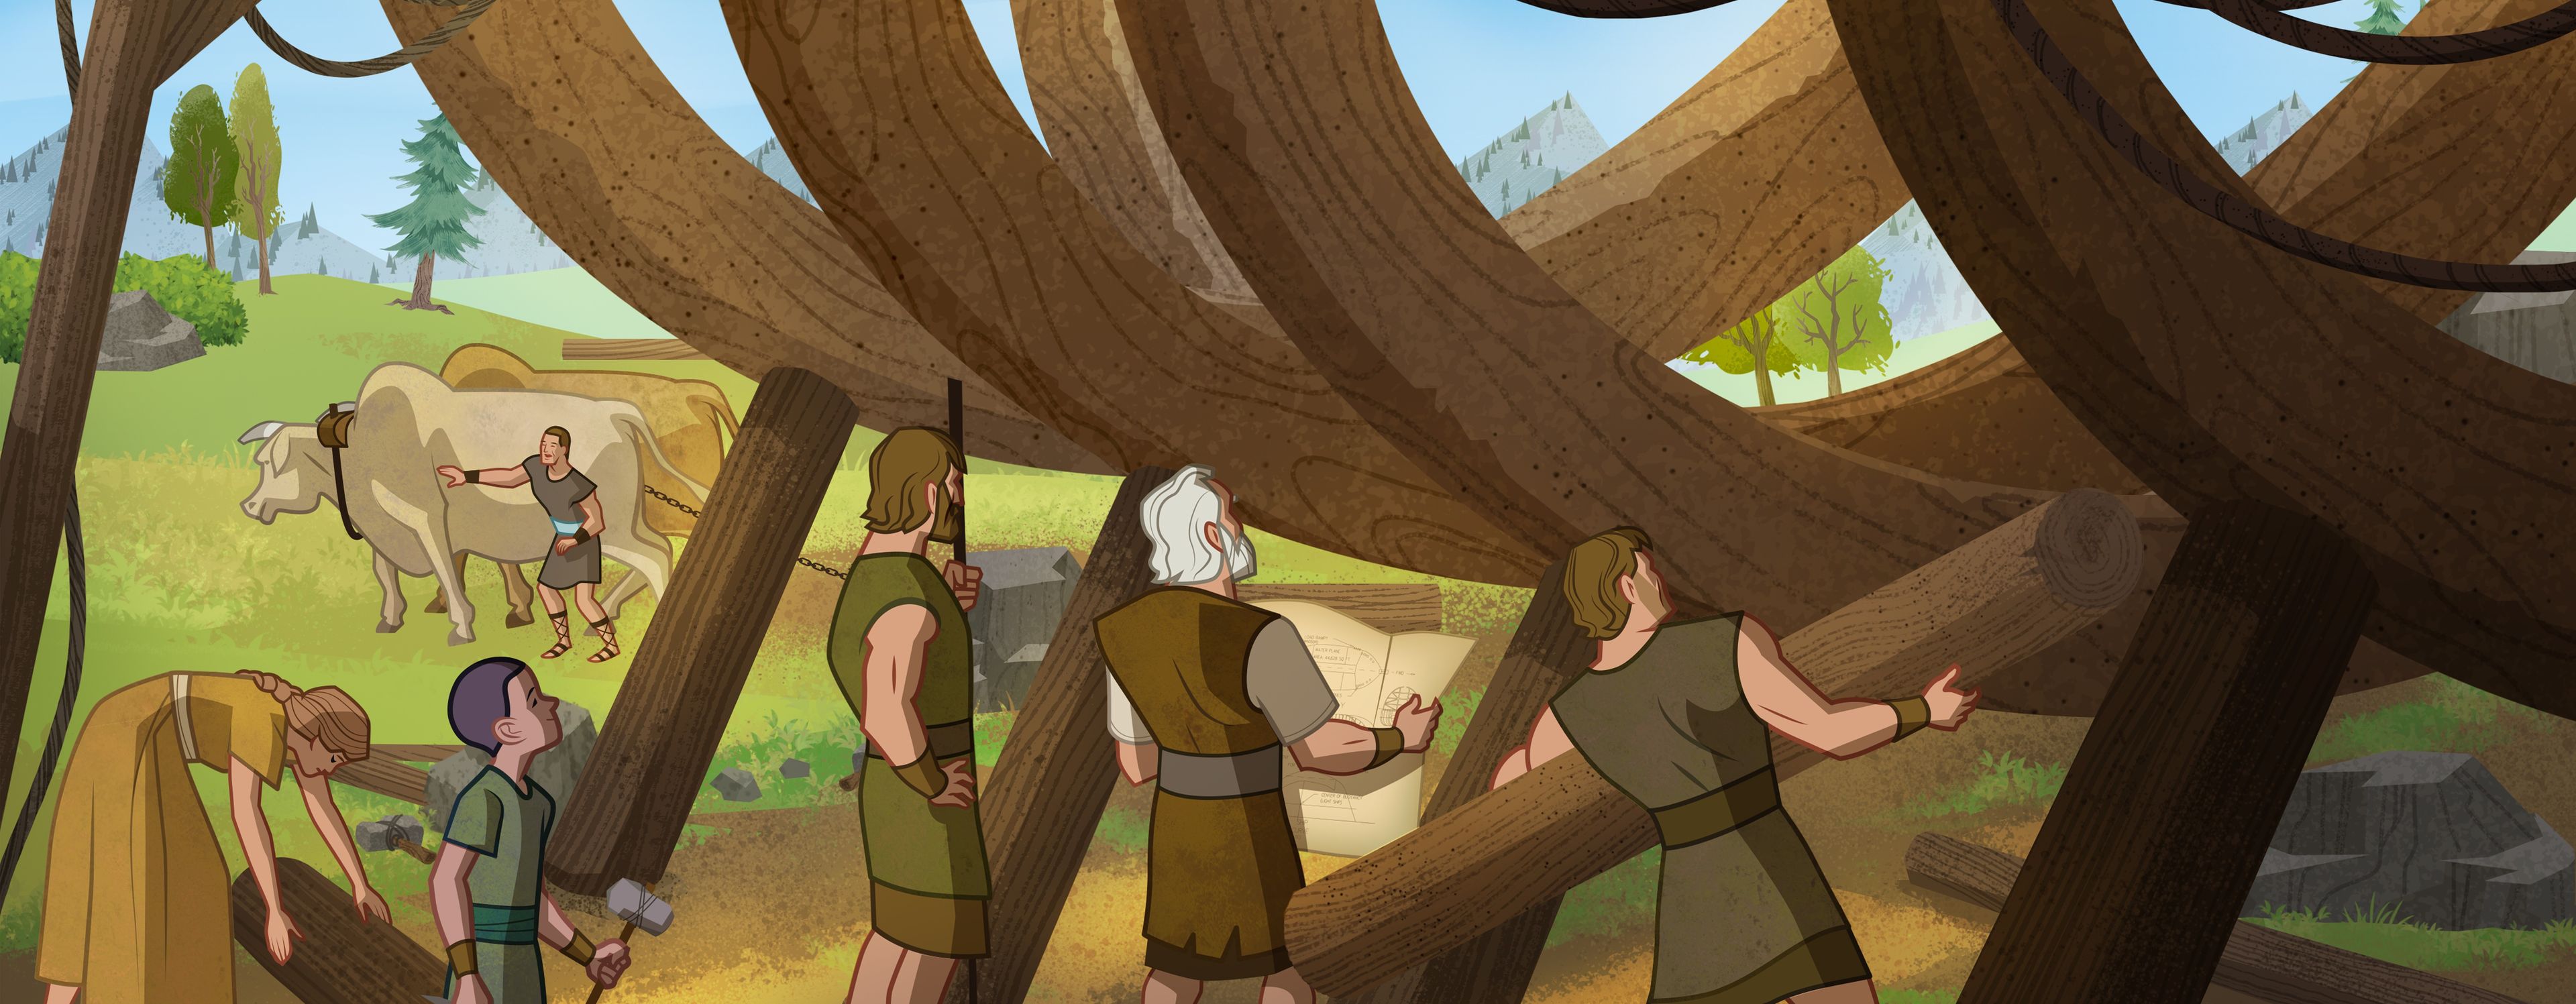 삽화: 방주를 짓는 노아와 가족 
창세기 6:14~18; 모세서 8:25